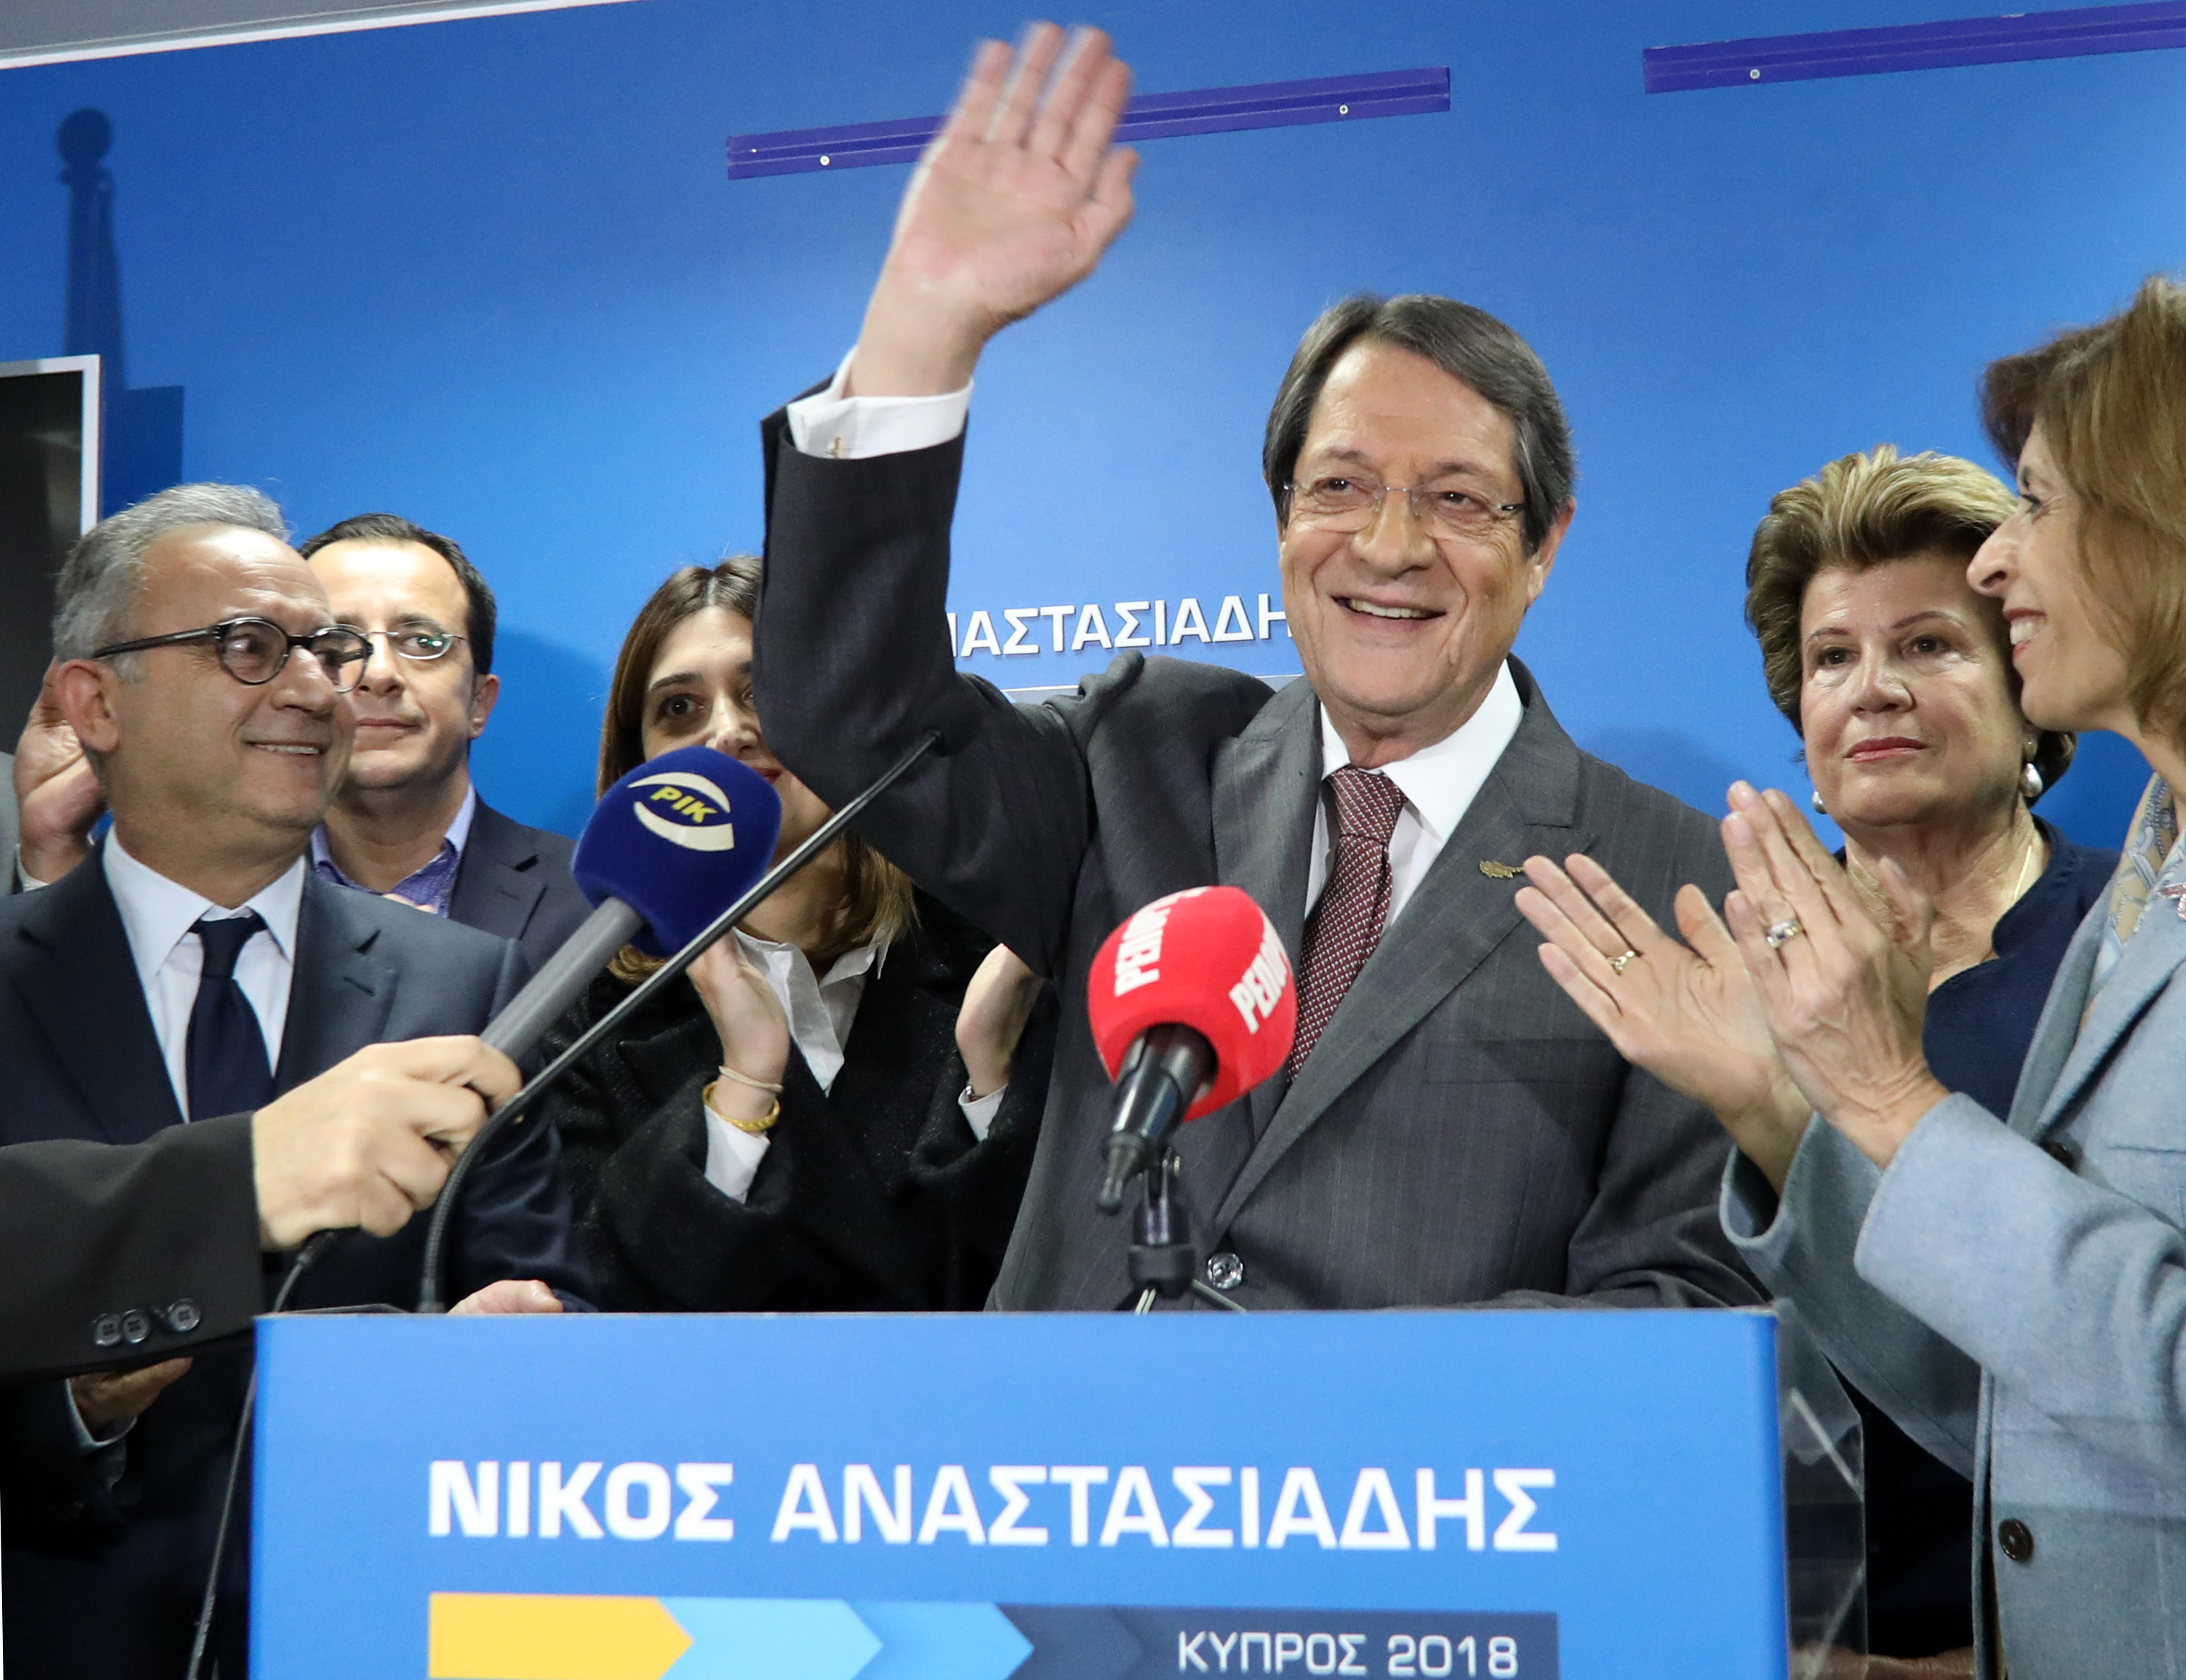 Πρόεδρος της Κύπρου ο Ν.Αναστασιάδης με μεγάλη διαφορά